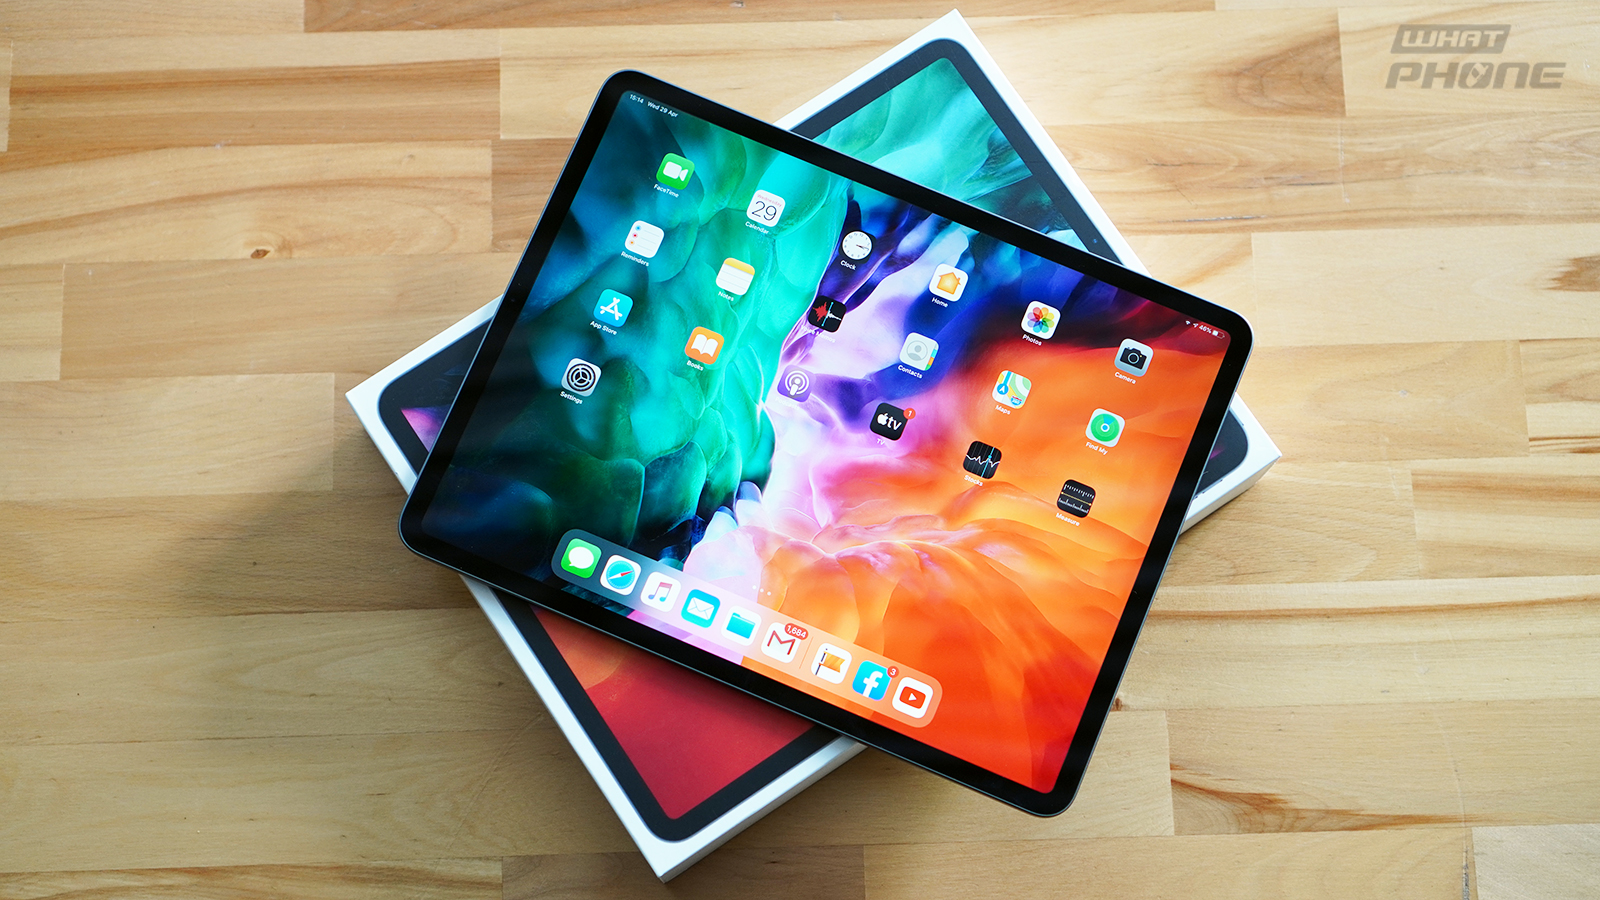 รีวิว iPad Pro รุ่น 12.9 นิ้ว ปี 2020 หน้าจอคมชัด ลื่นไหล มาพร้อมกล้องคู่ ประสิทธิภาพสุดแรง